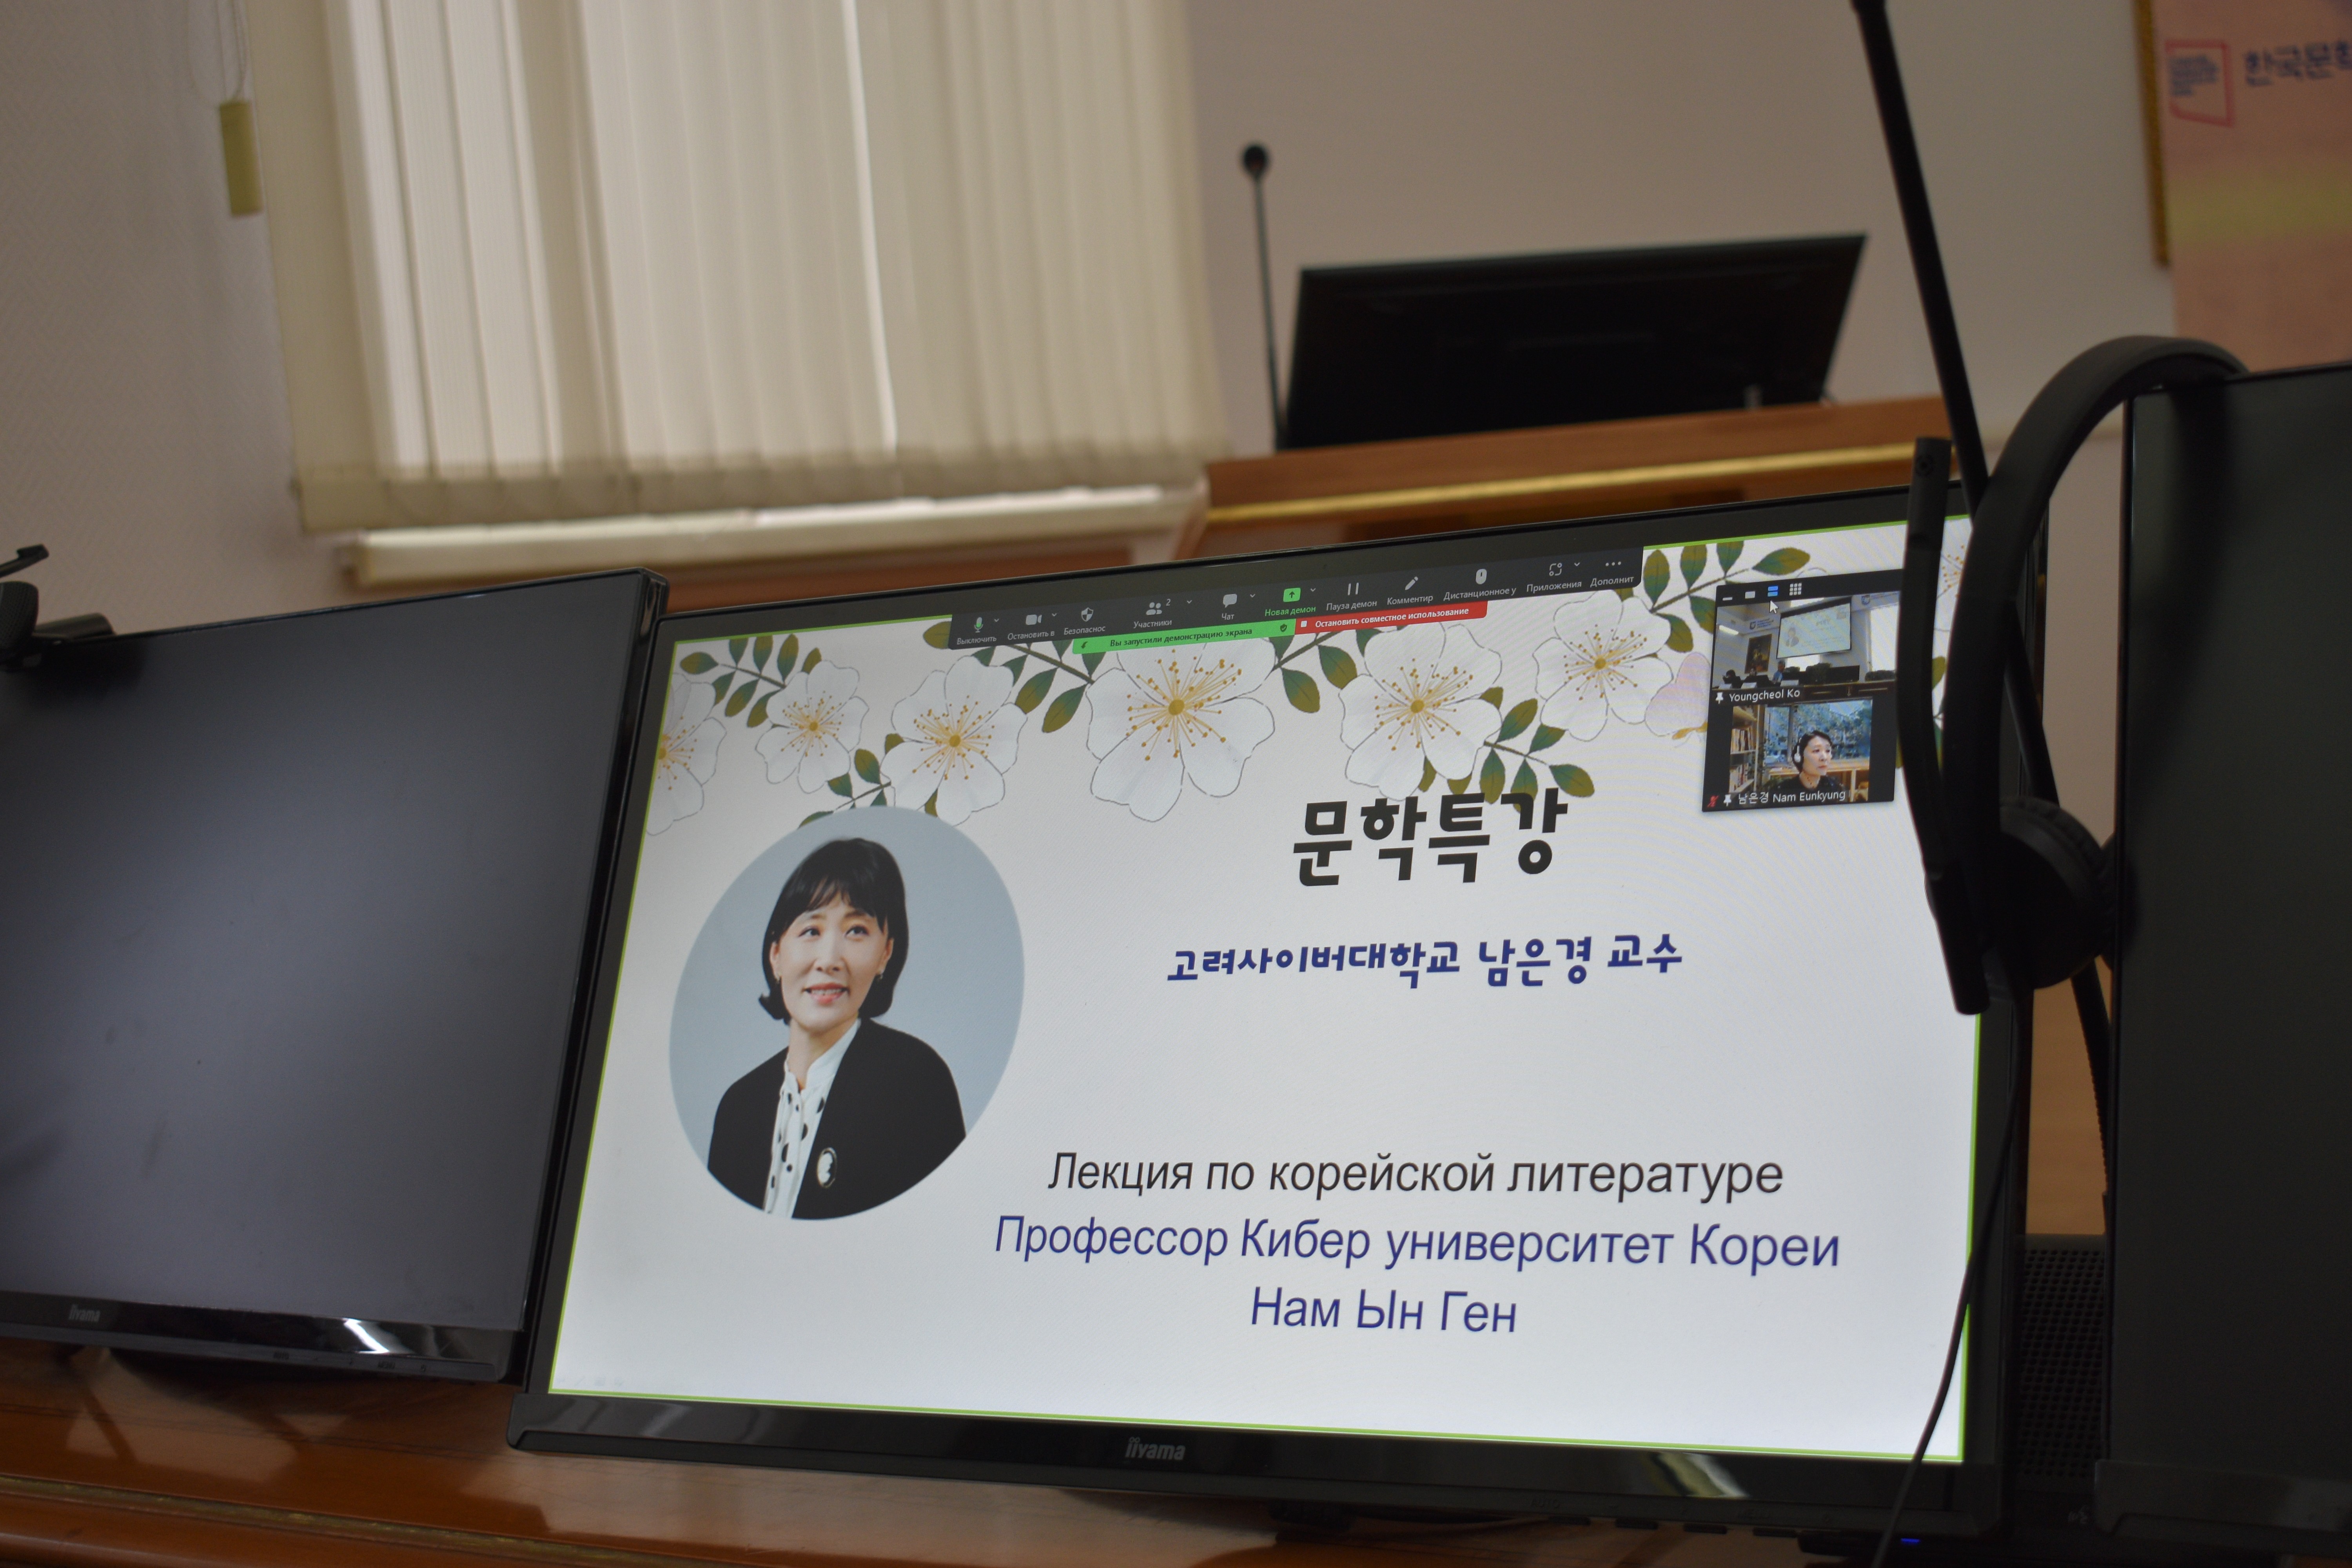 Конкурс перевода корейской литературы прошел в Институте международных отношений ,имо